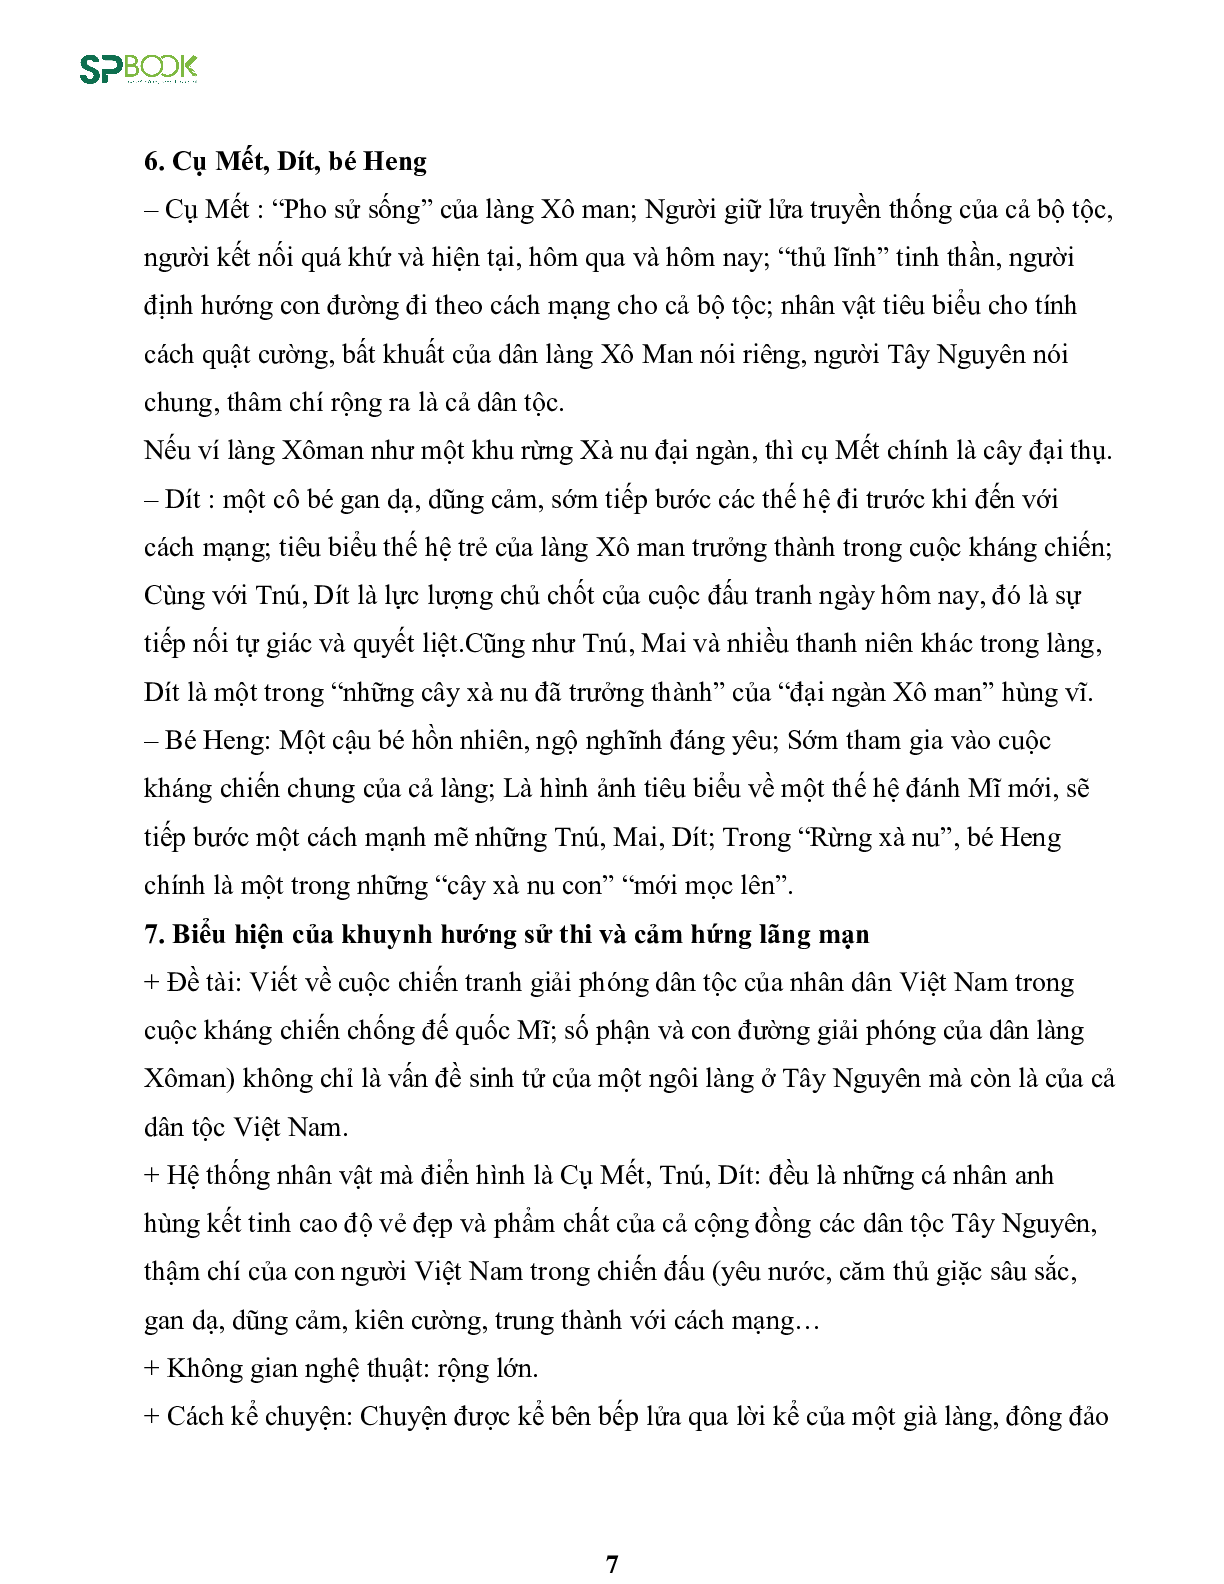 Kiến thức cơ bản và những dạng đề thi về bài Rừng xà nu - Nguyễn Trung Thành Ngữ văn 12 (trang 7)